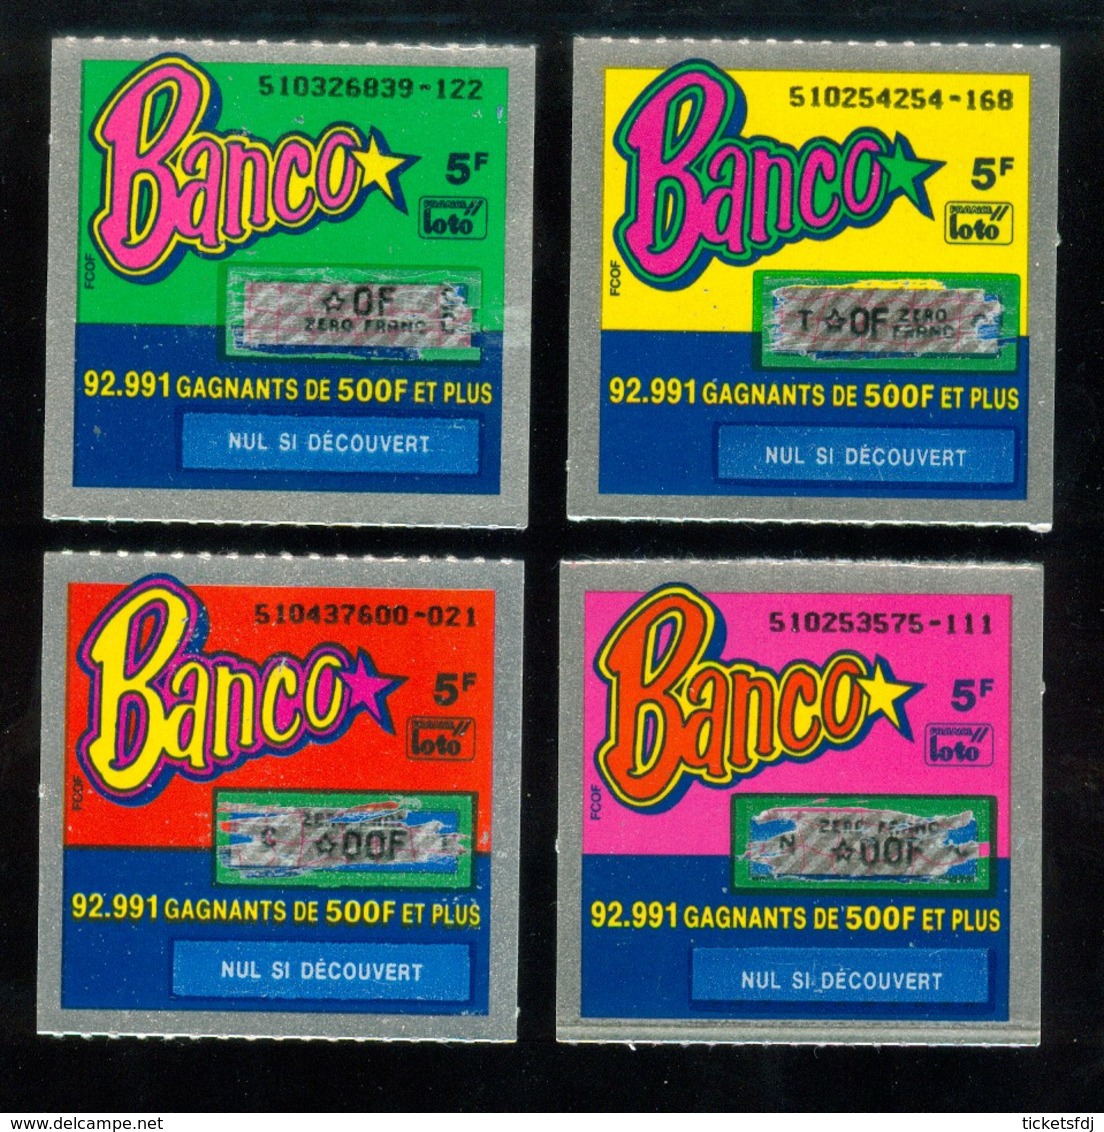 Grattage FDJ - Série Complète BANCO 51 - La Toute Première émission 1990 - Billets De Loterie